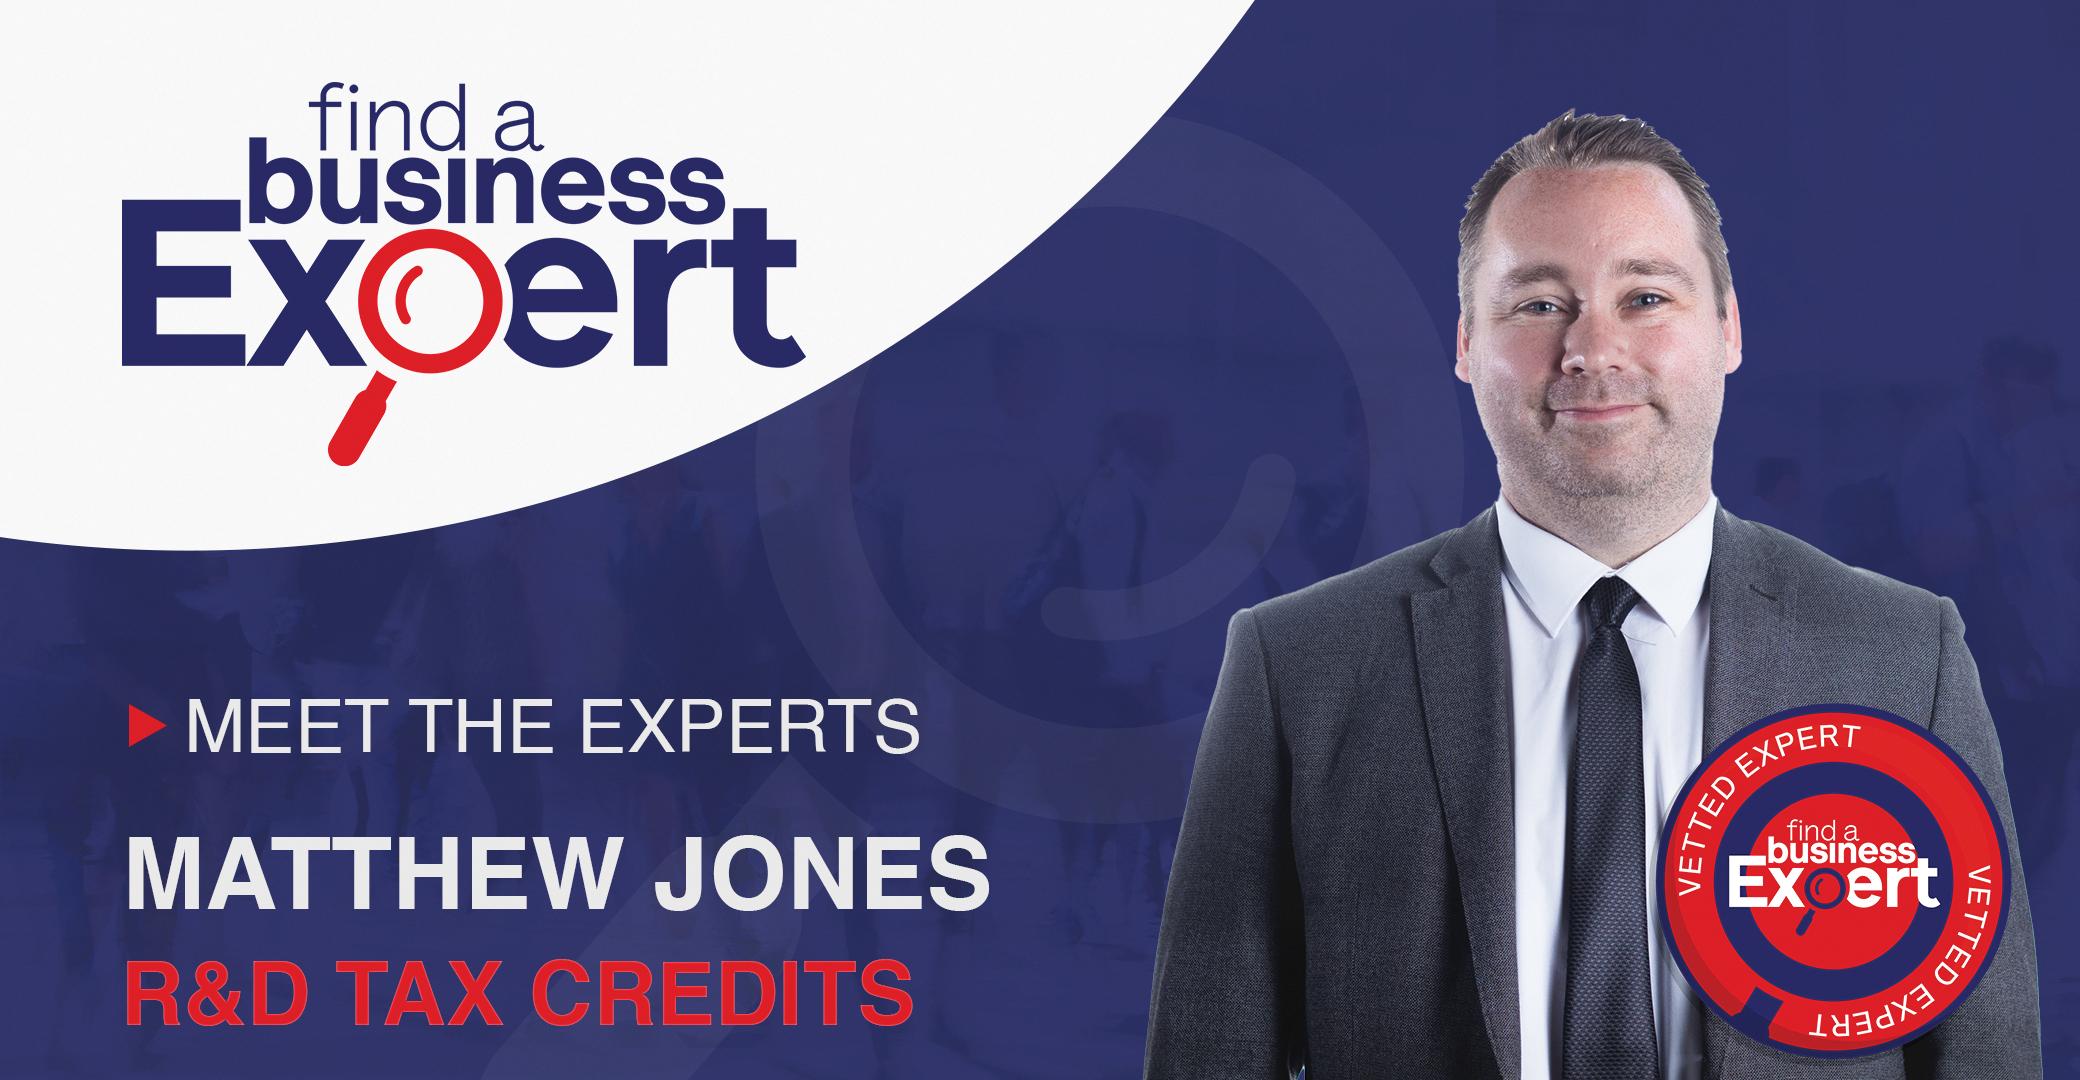 Matthew Jones - R&D Tax Credits